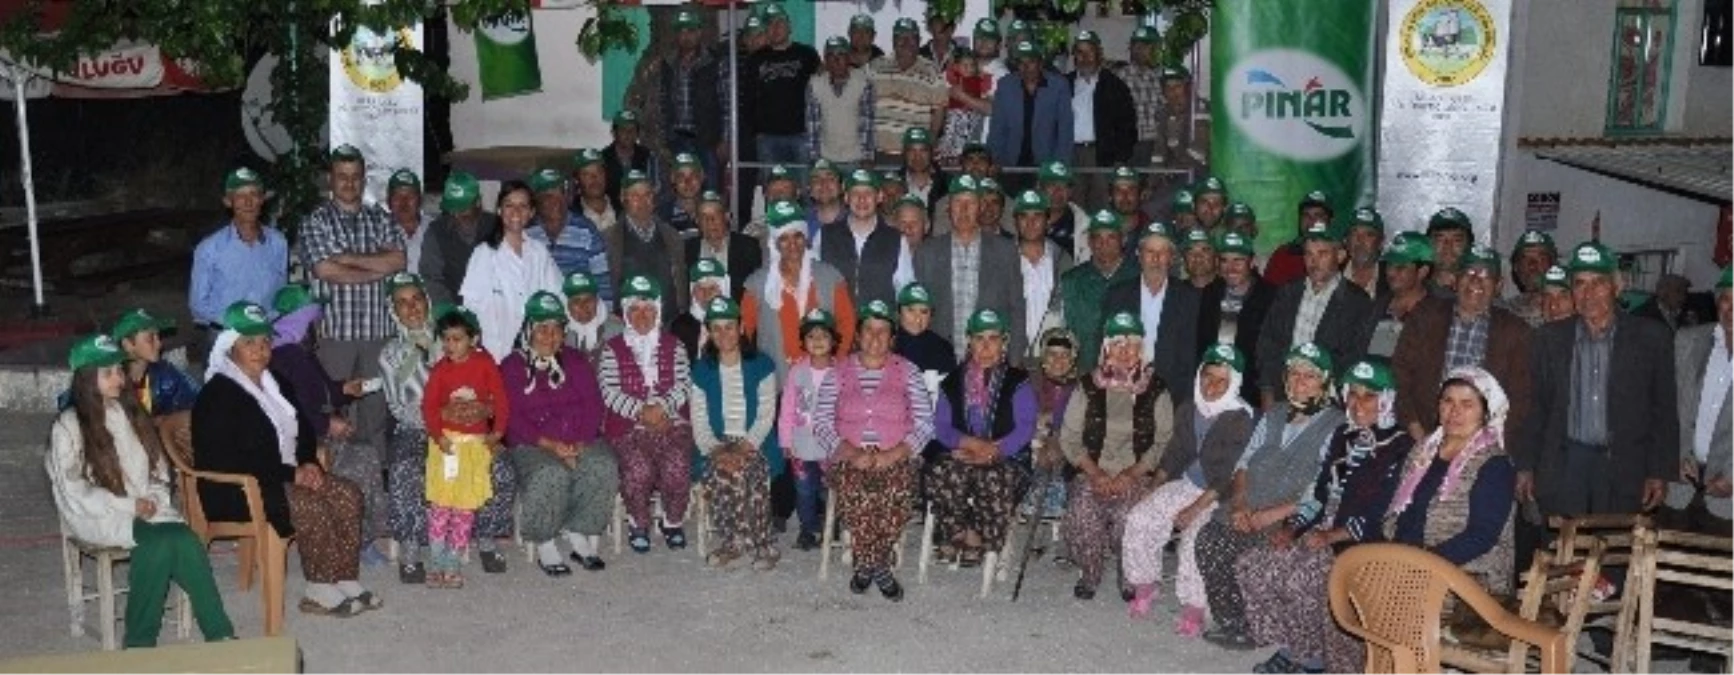 Çiğ Süt Üretimi Pınar Enstitüsü Güvencesinde